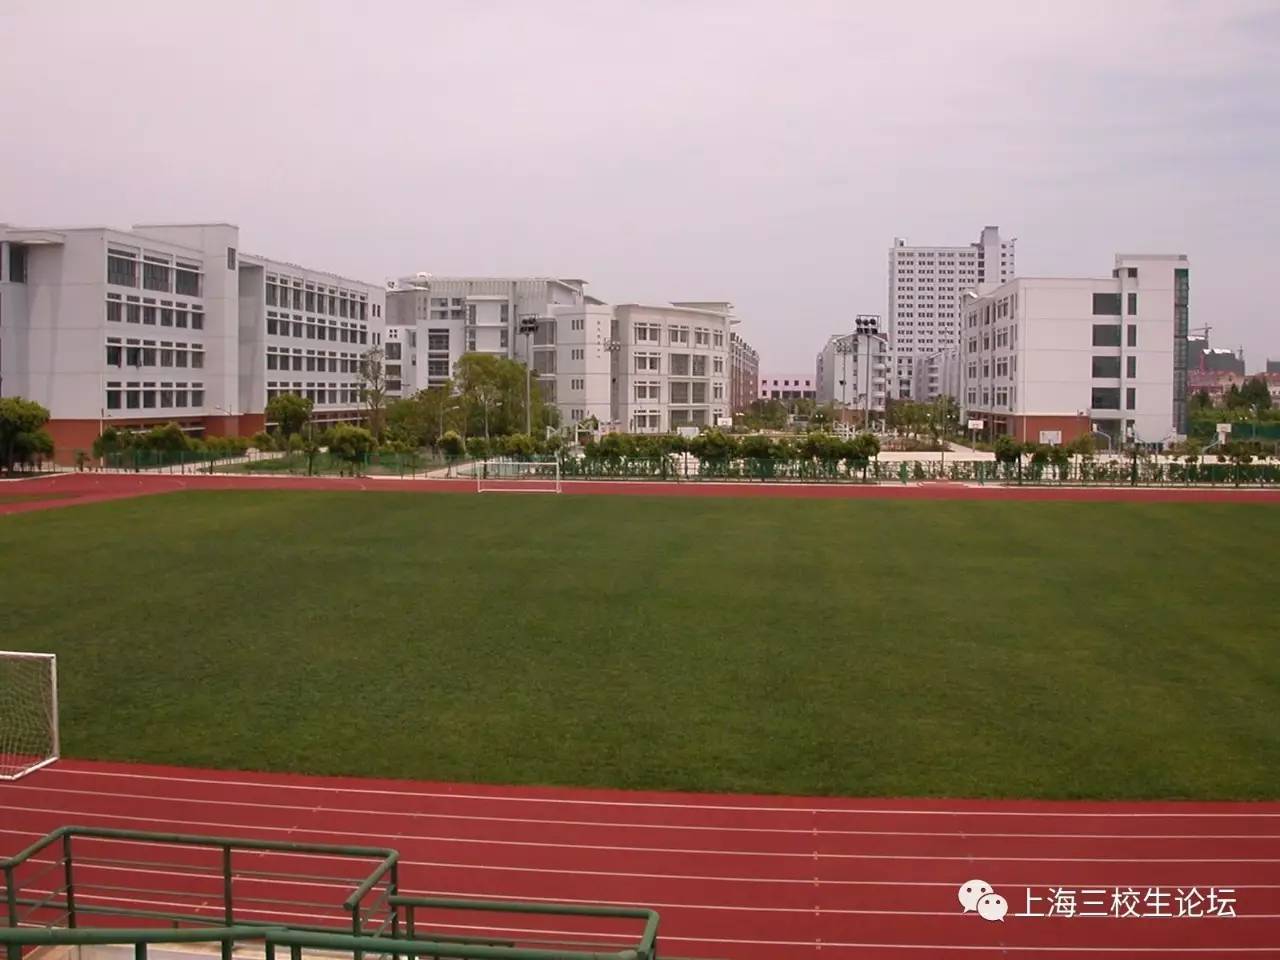 校园风景上海商学院